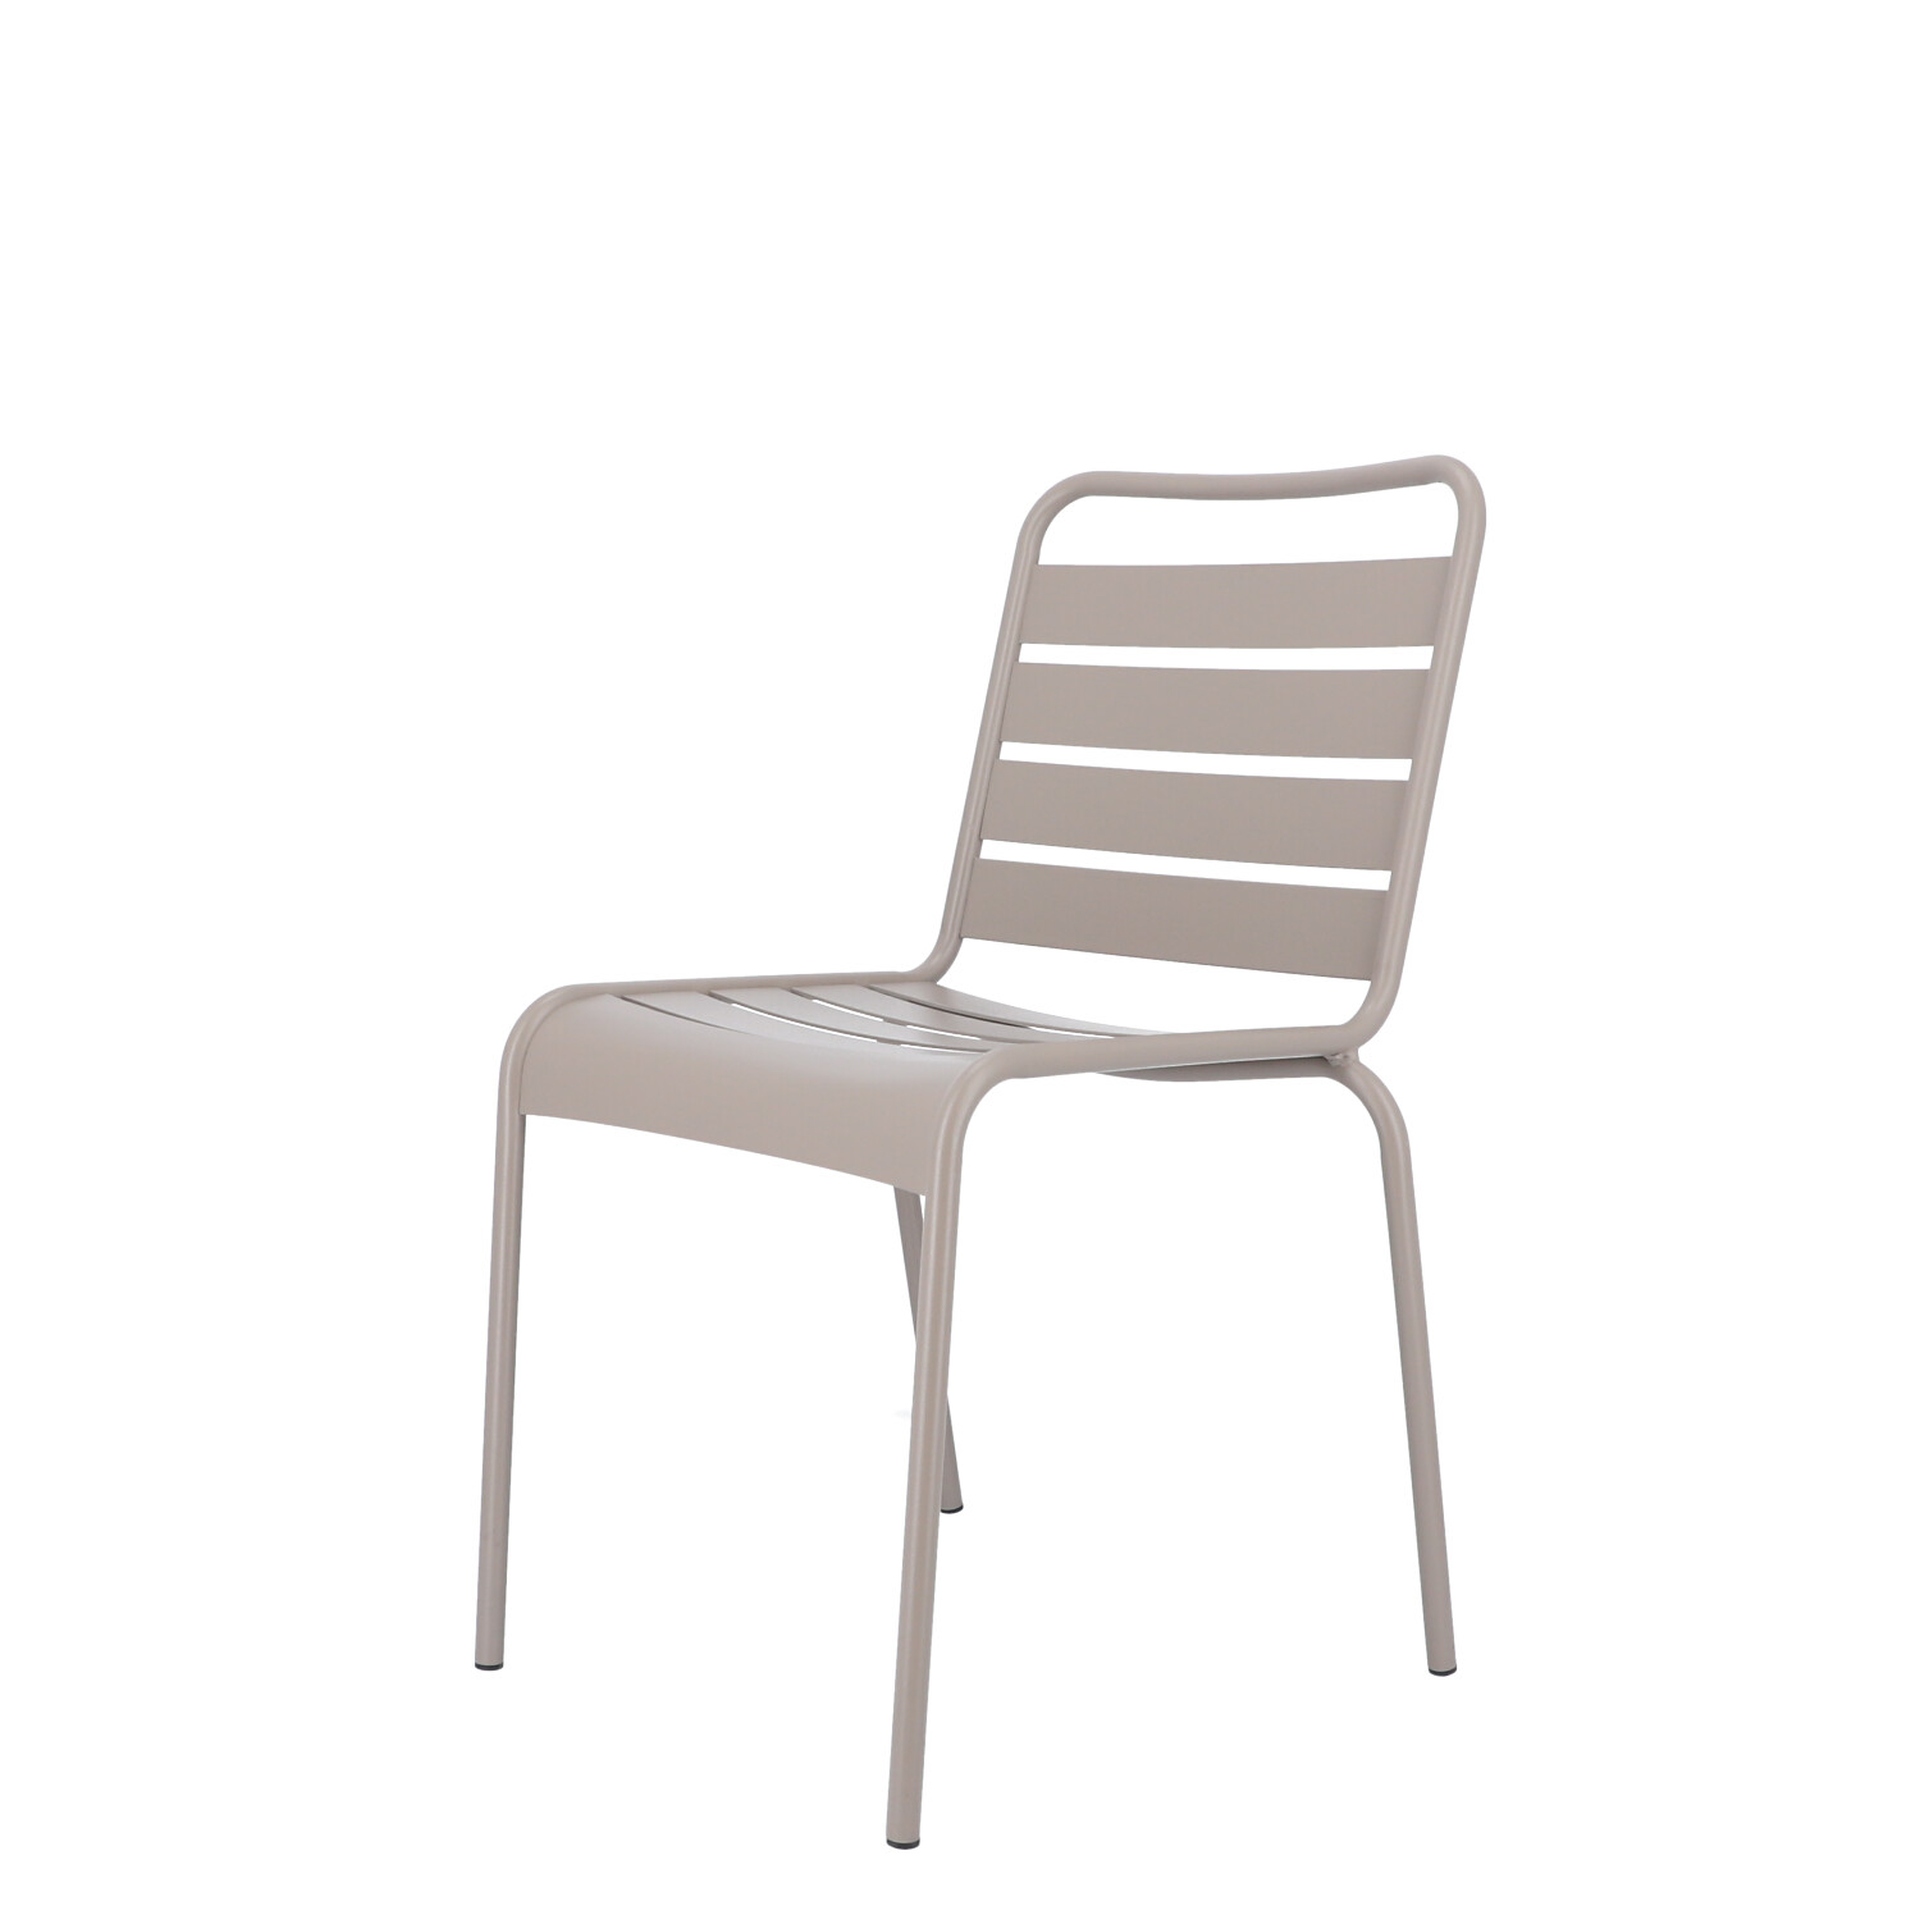 Der moderne Stapelstuhl Mya wurde aus Aluminium gefertigt und hat einen taupe Farbton. Designet wurde der Stuhl von der Marke Jan Kurtz.